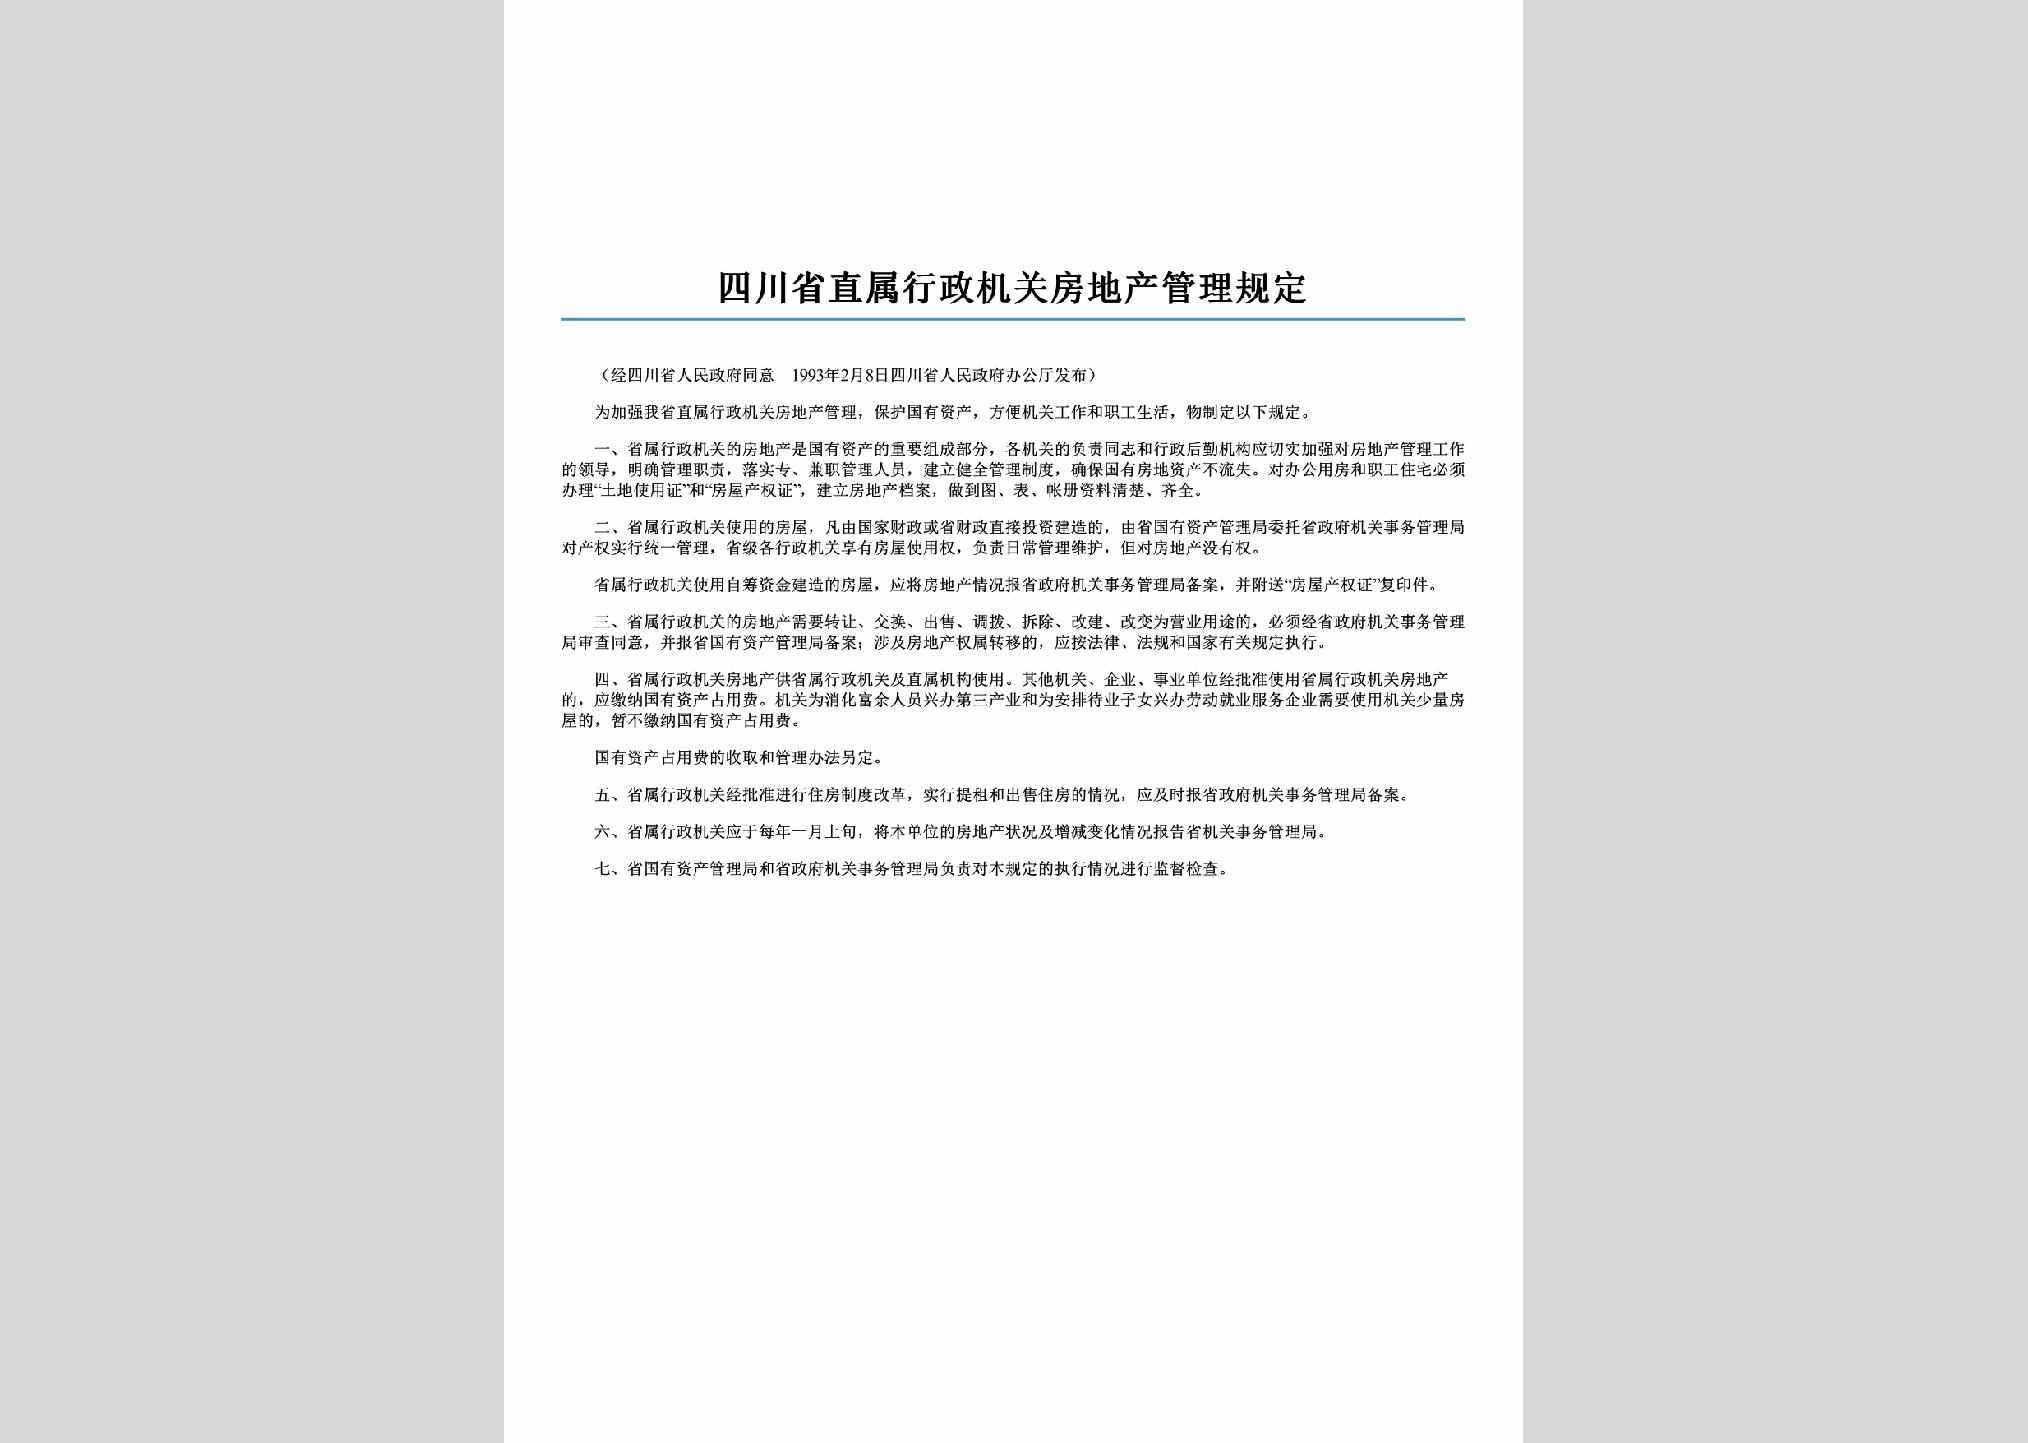 SC-FDCGLGD-2006：四川省直属行政机关房地产管理规定